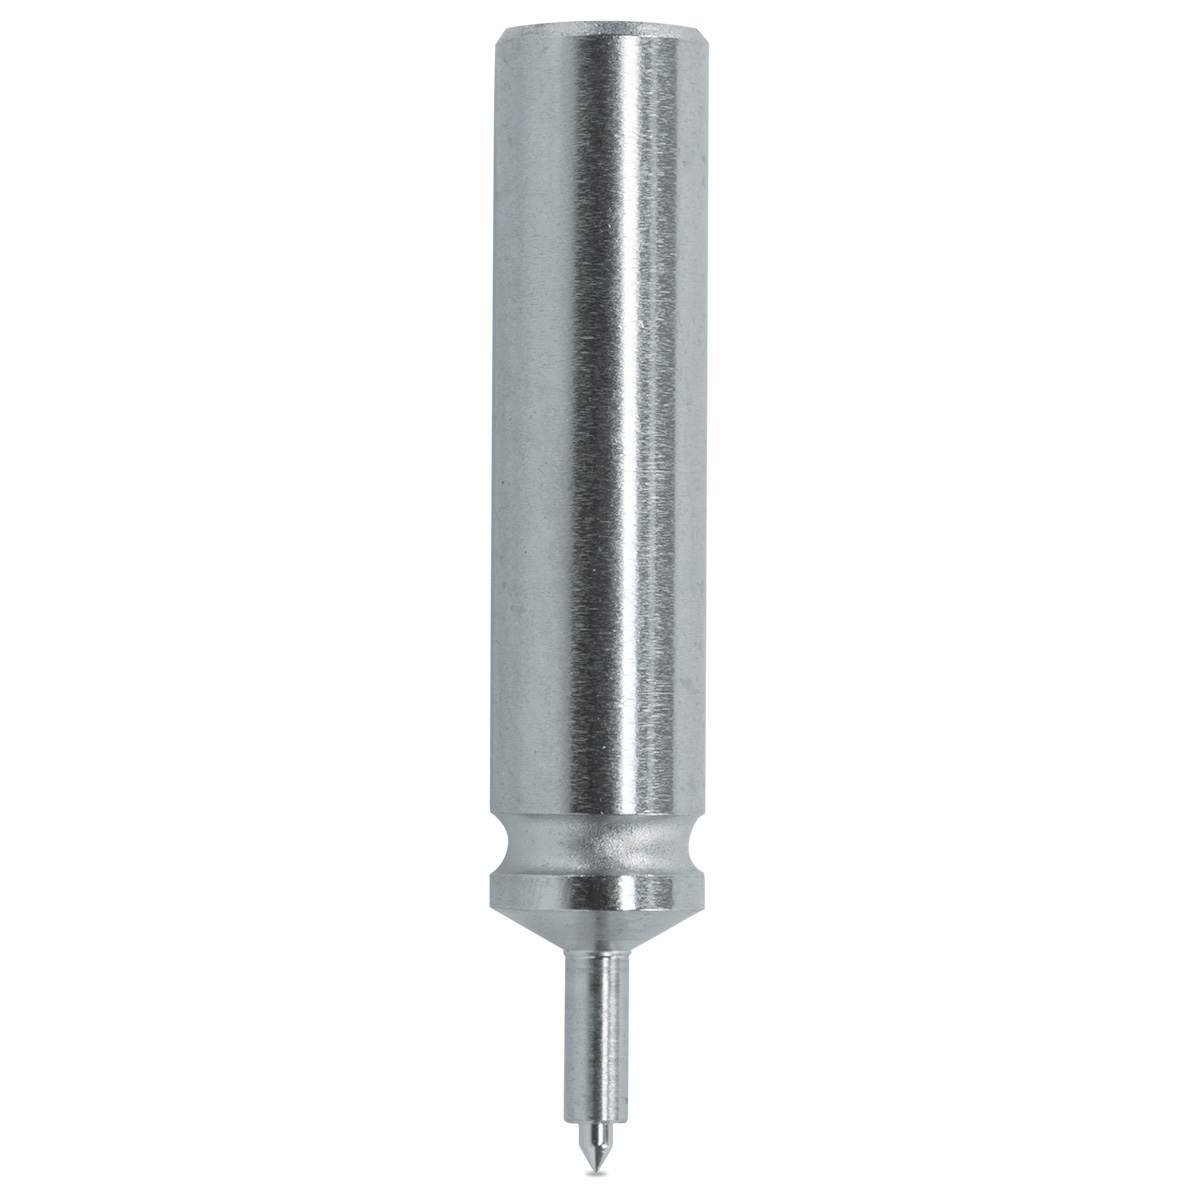 Federnder Stempel HORIA N°60-3Ø aussen 0.55 mm / Ø Pumpe 0.40 mm